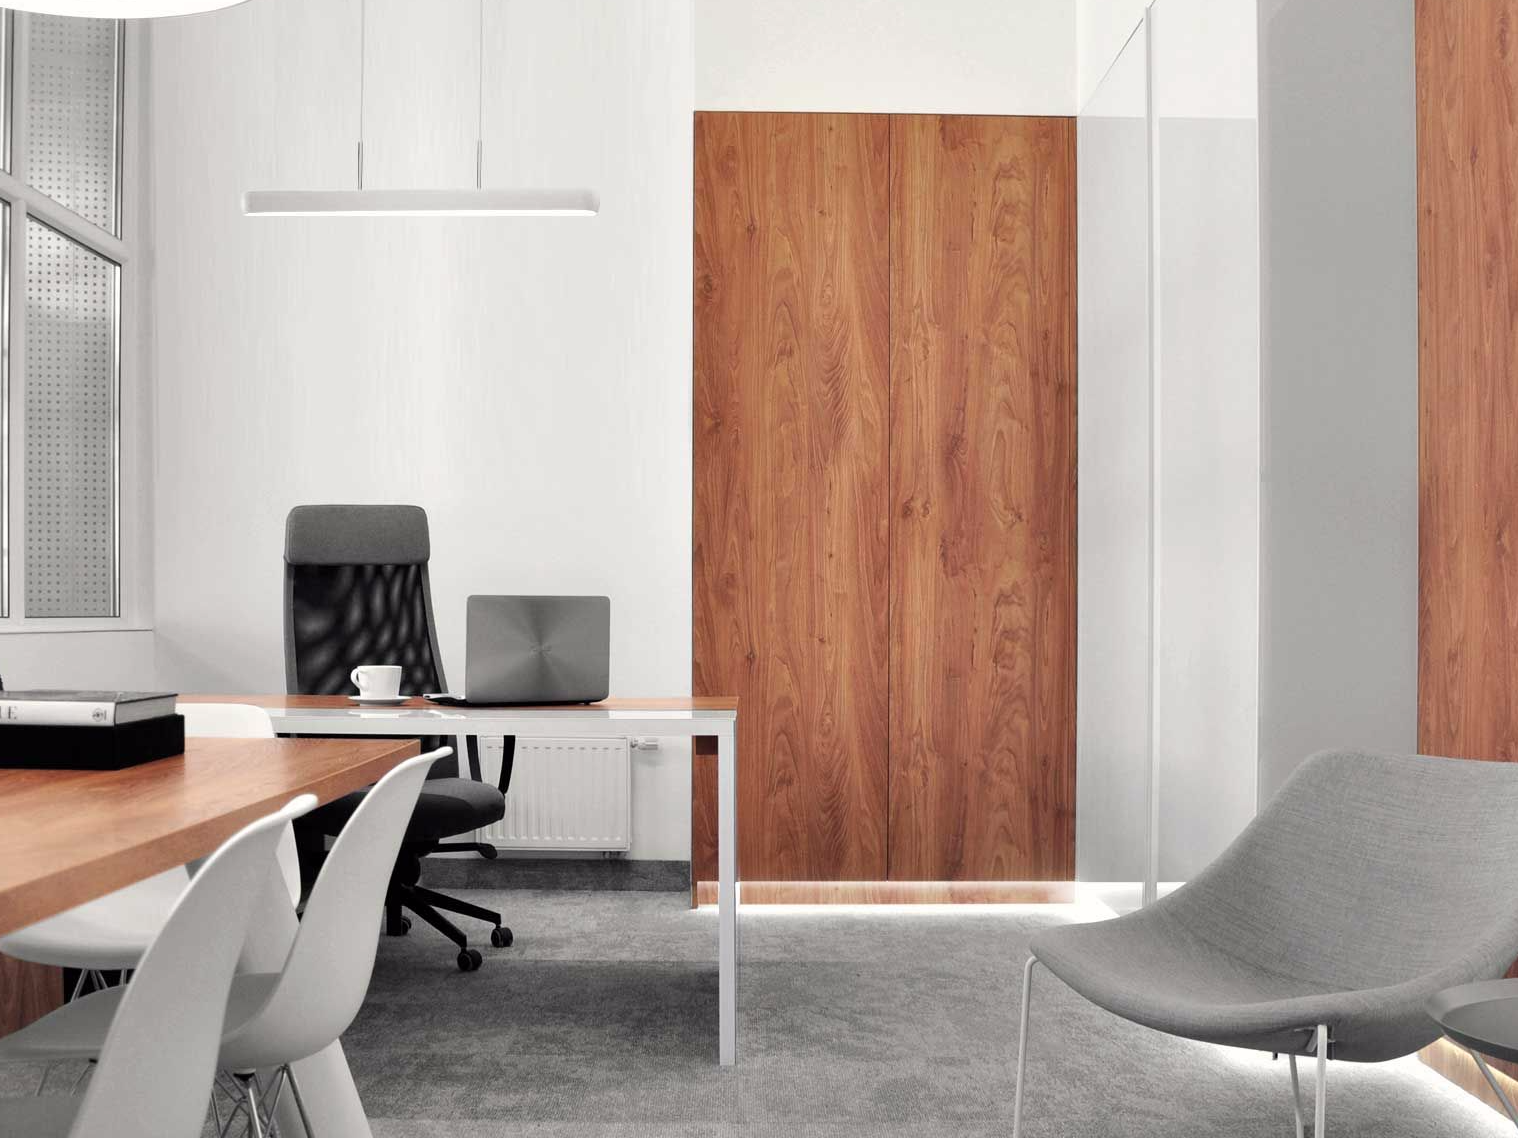 biuro przestrzeń biurowa kamea projekt architektoniczny nowoczesne biuro minimalizm bartosz klim milkdesigns lodz łódź warszawa czapki rękawiczki szaliki